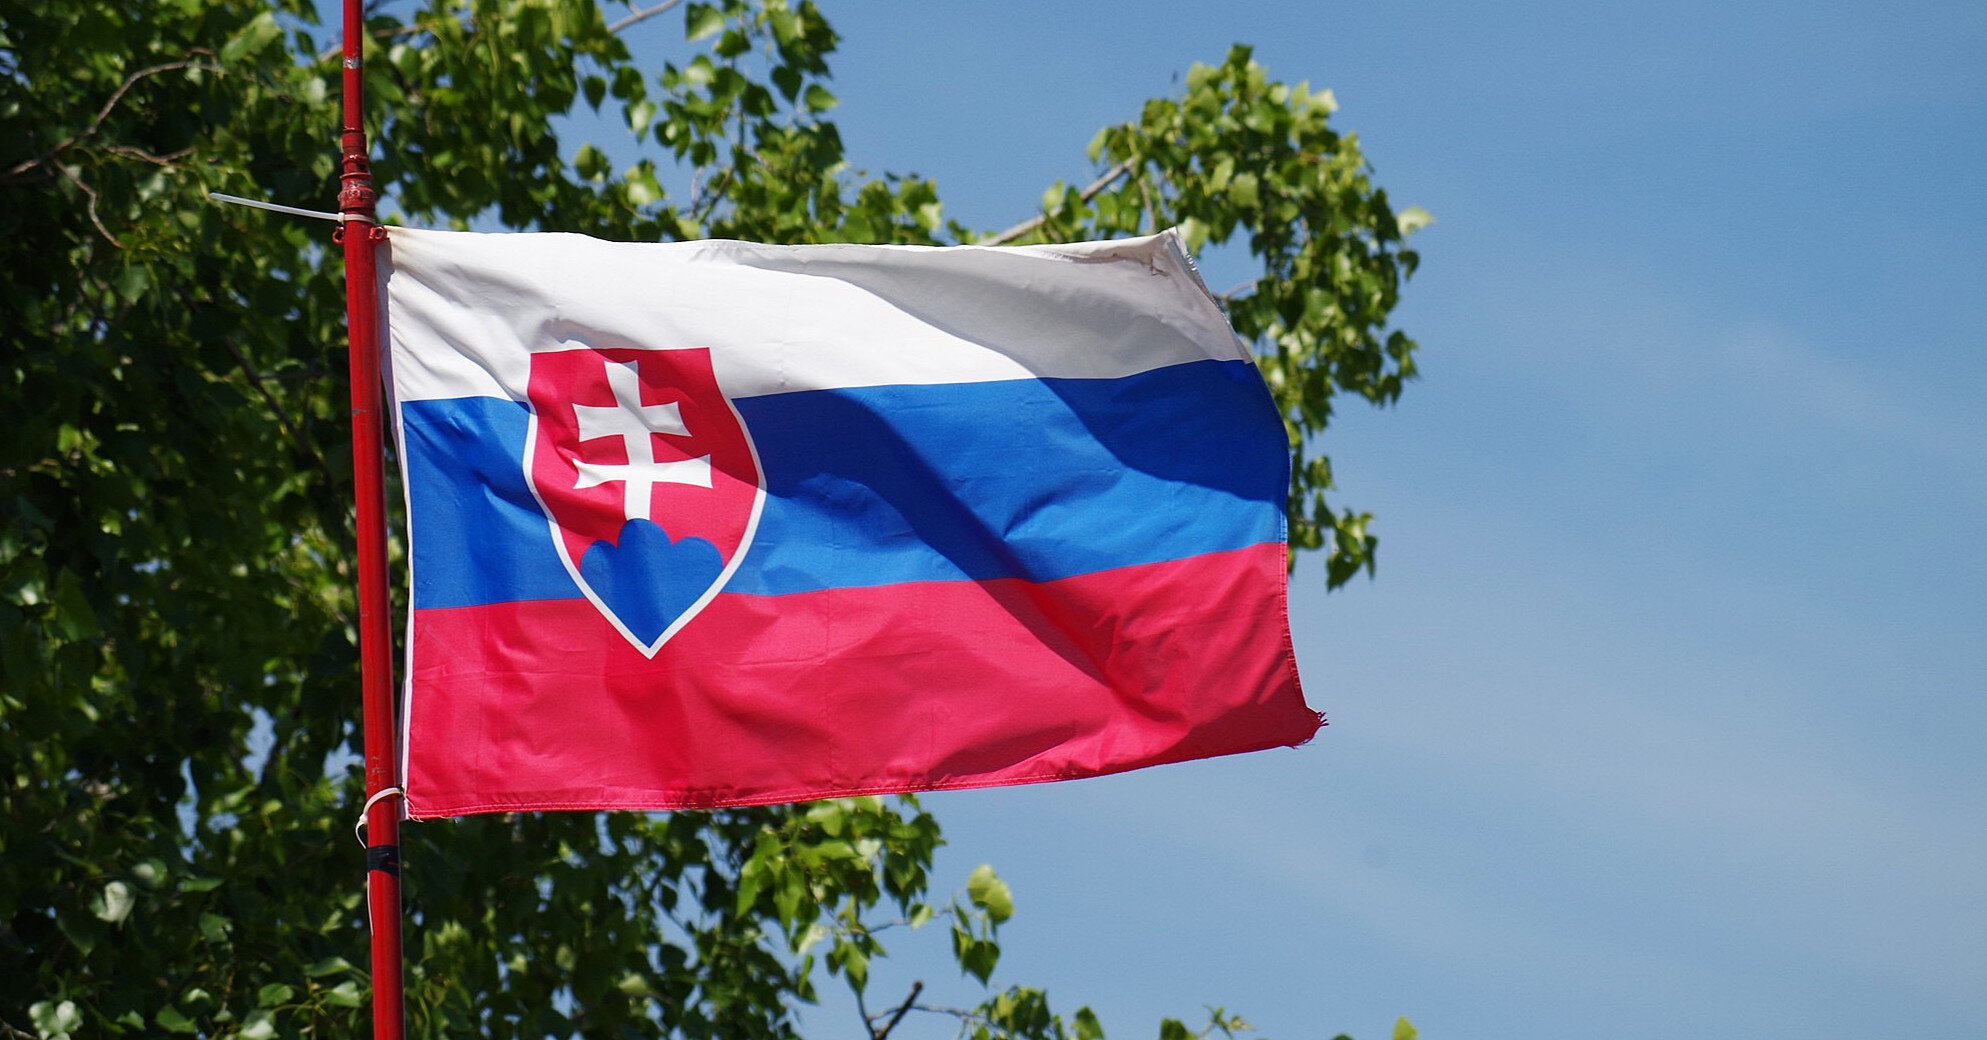 Більшість словаків покладають на Захід та Україну провину за війну з Росією